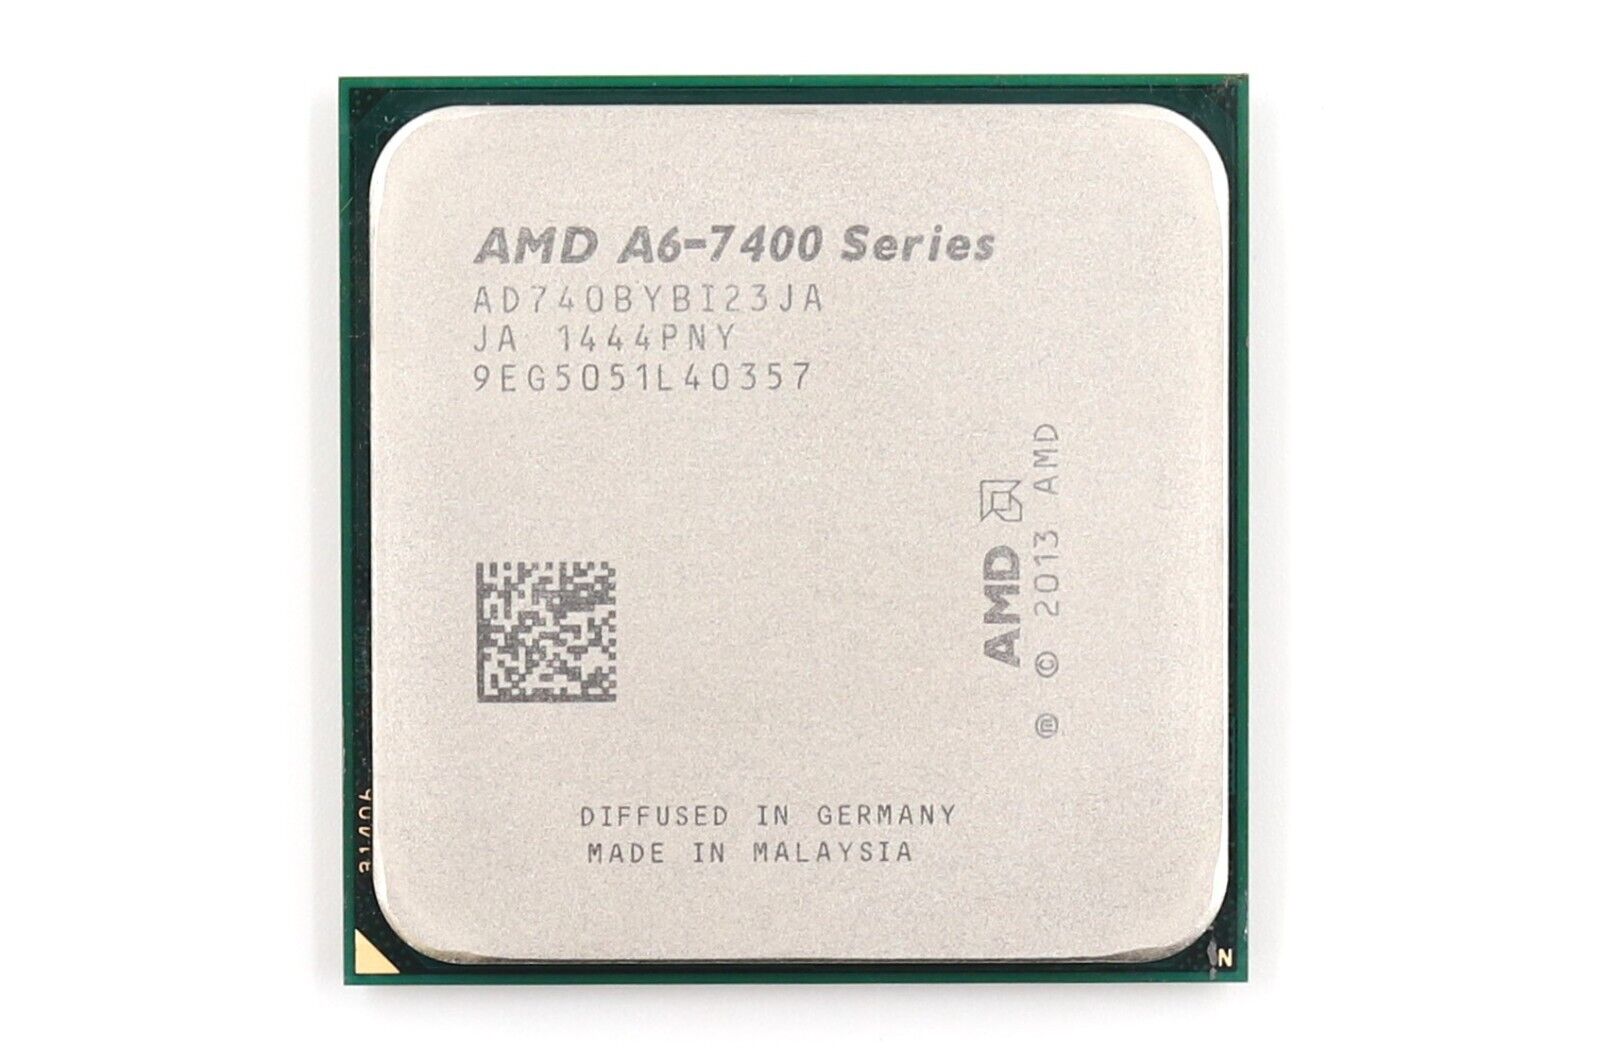 AMD A6-Series A6-7400B PRO 3.50GHz Dual-Core Socket FM2+ CPU P/N: AD740BYBI23JA